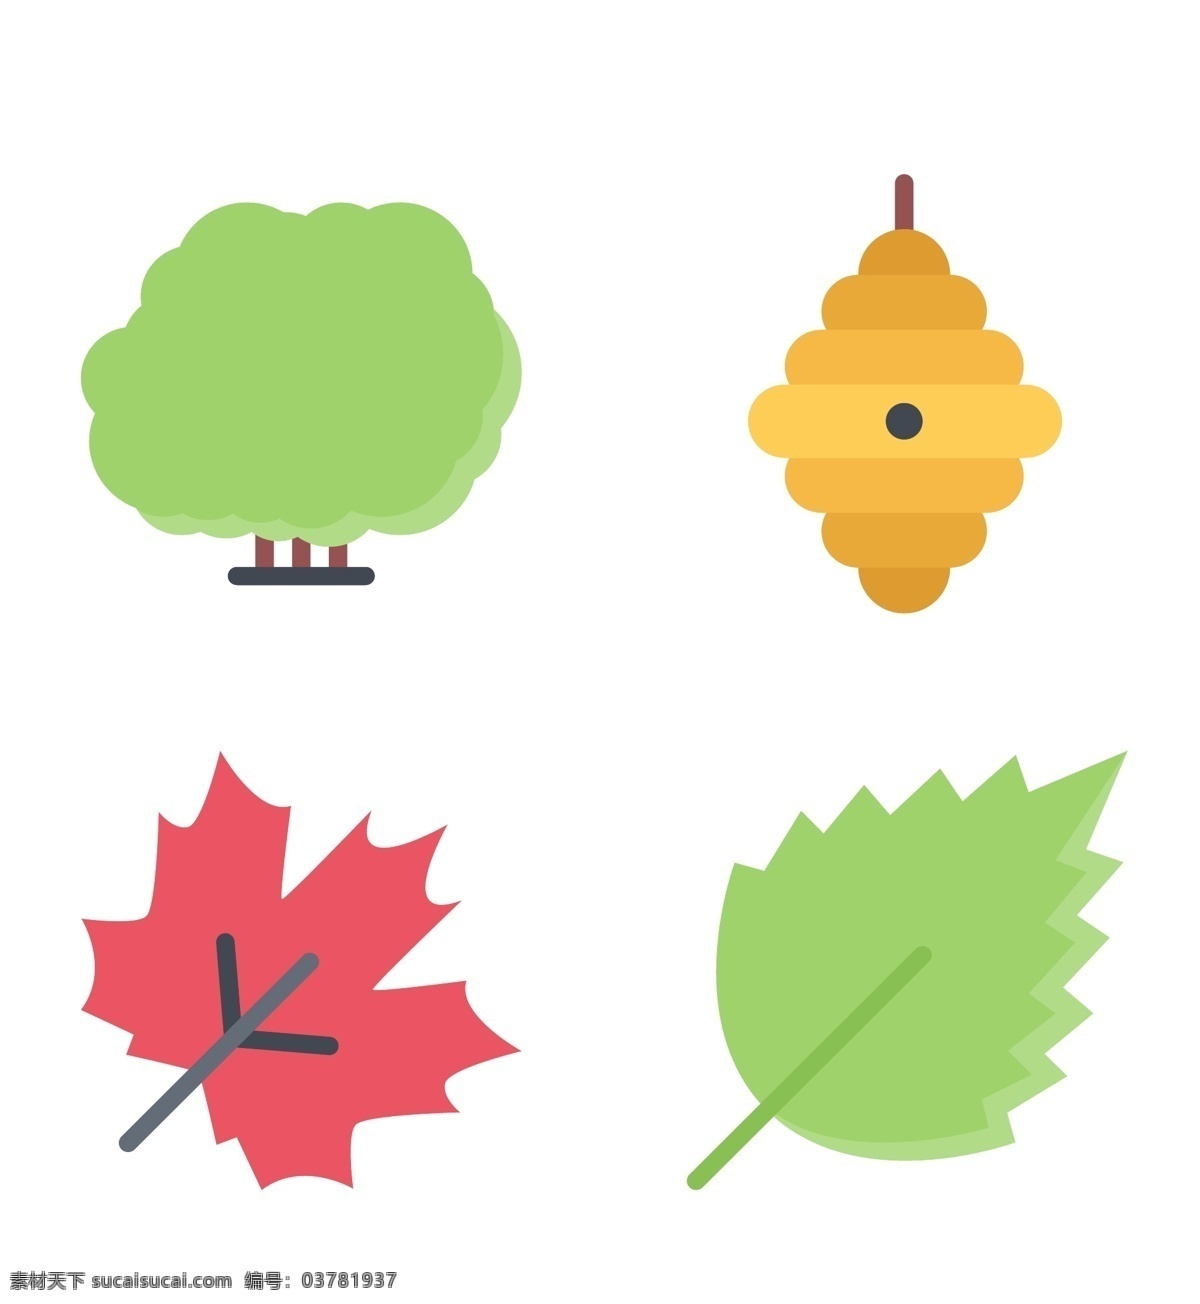 精美 绿叶 环境 icon 图标 树木 蜂巢 网页图标 创意图标 图标下载 图标设计